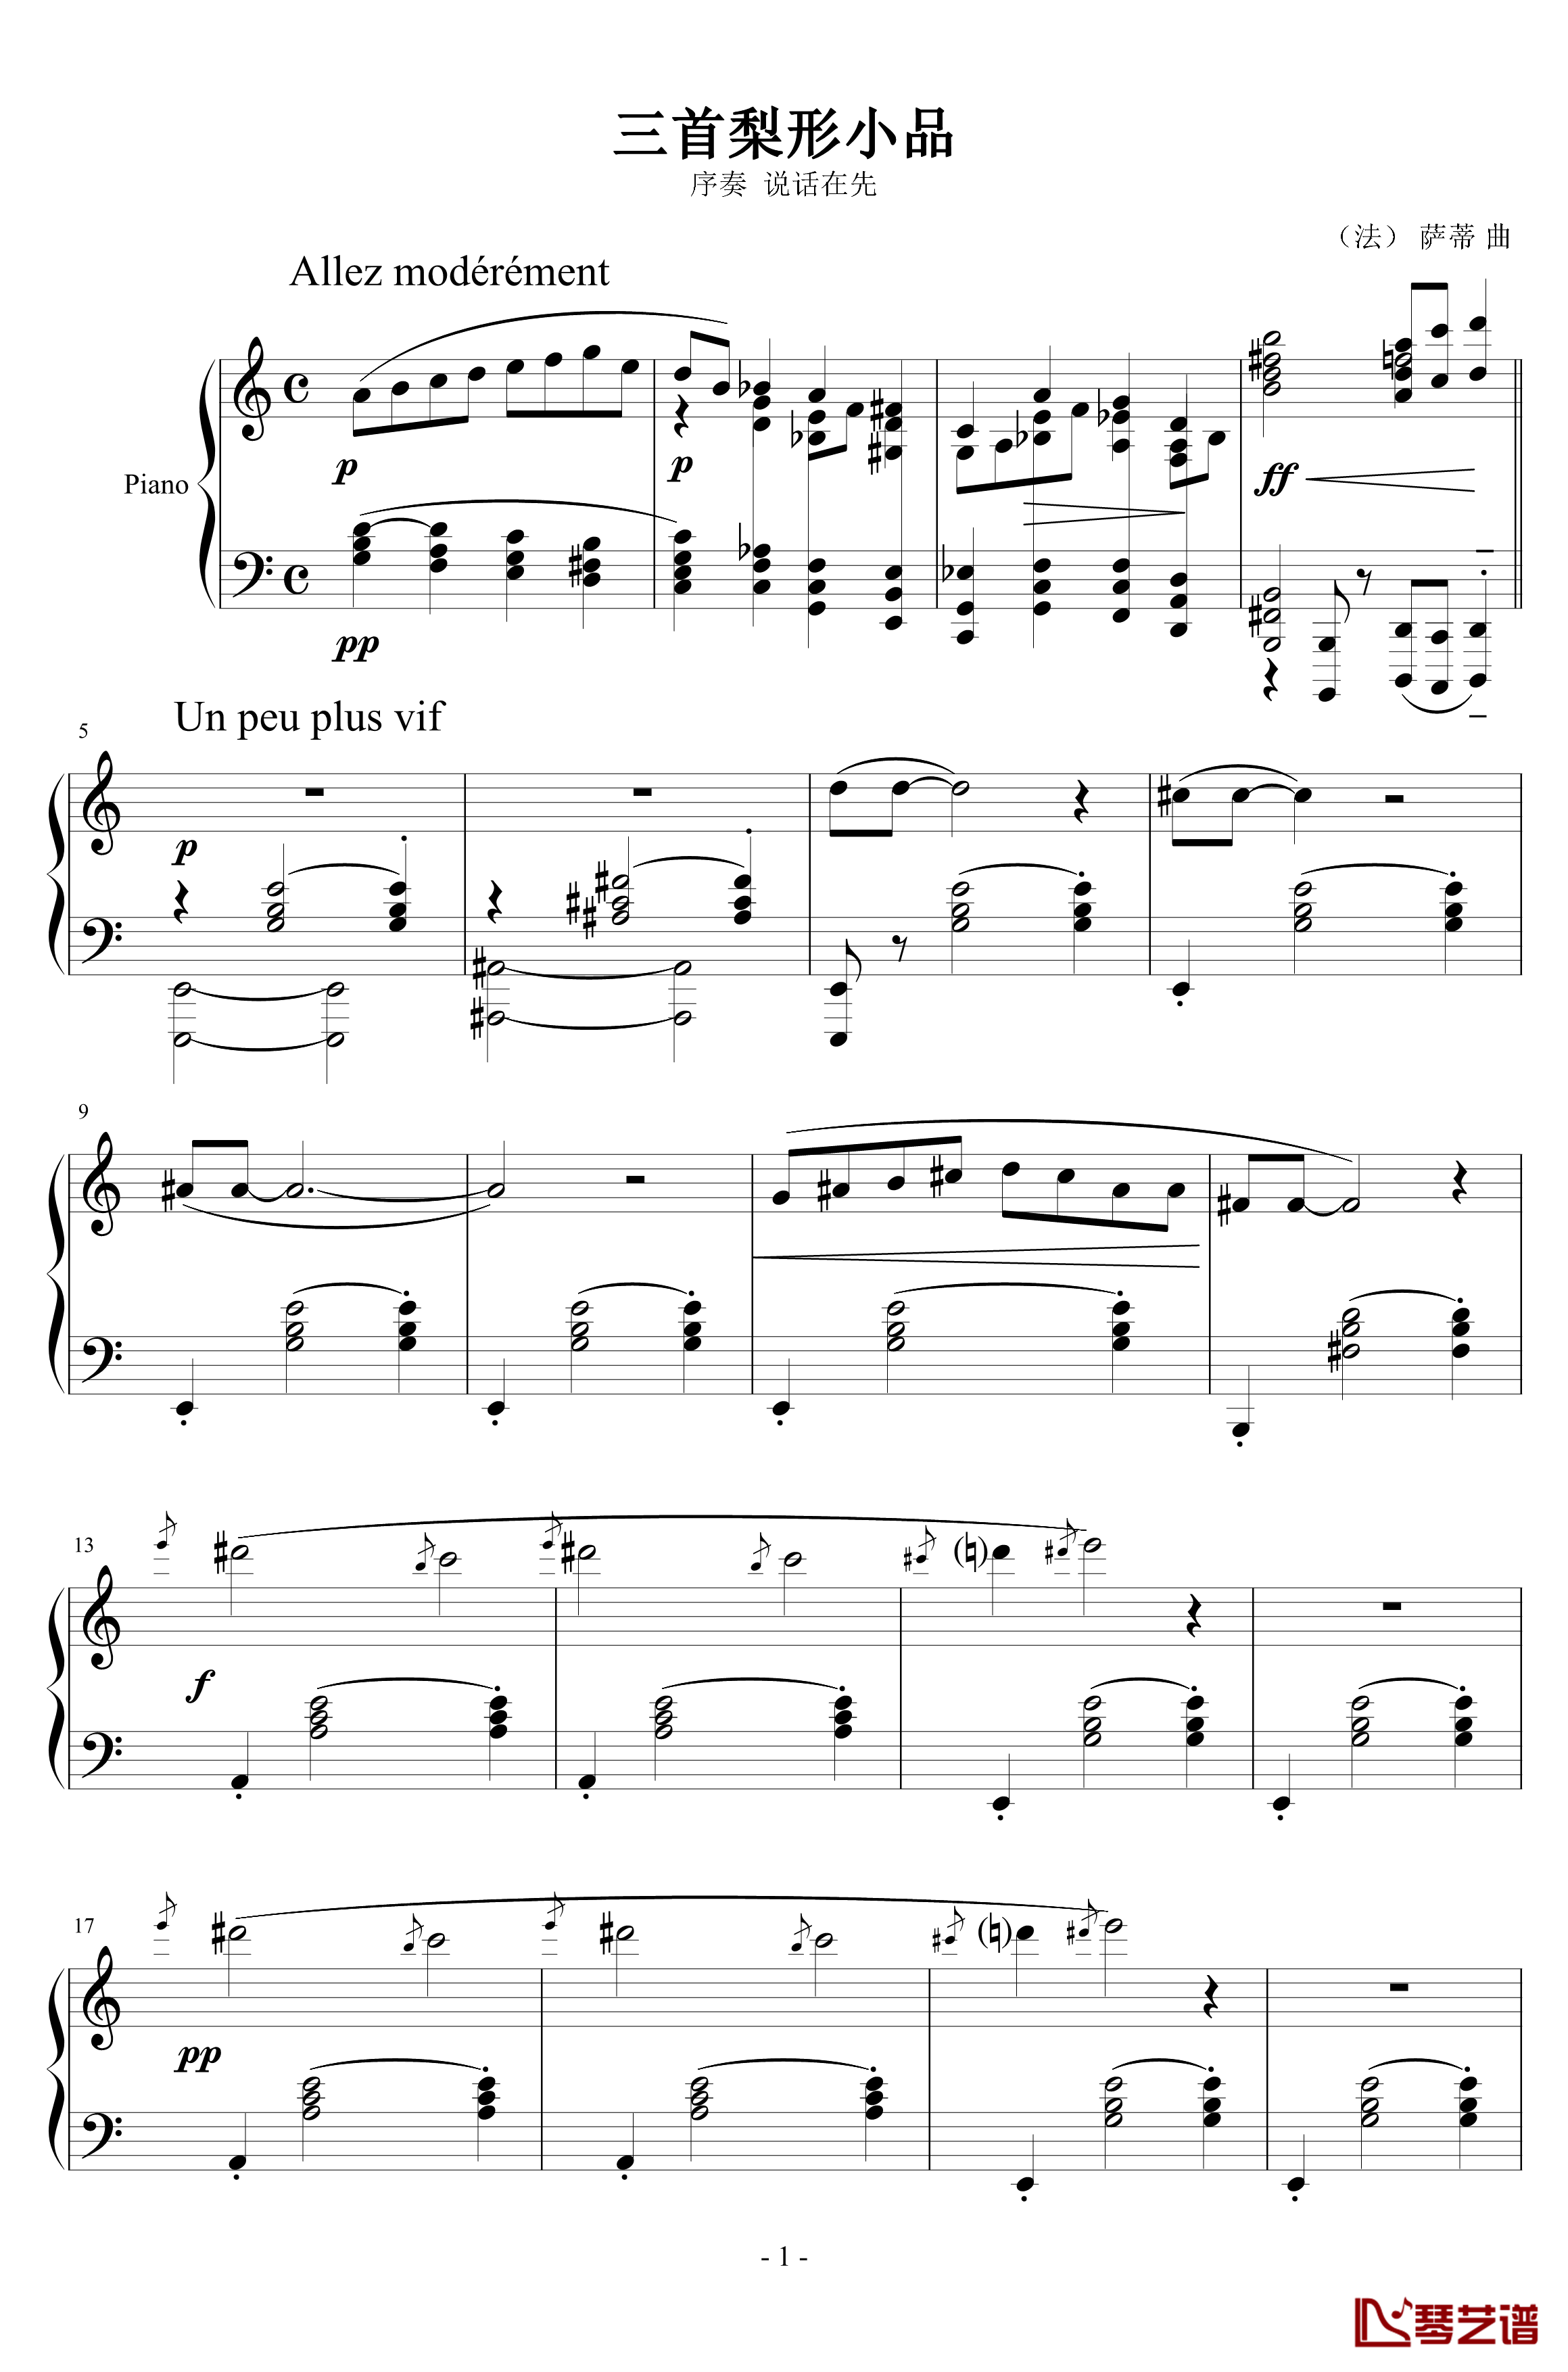 三首梨形小品钢琴谱-序奏-说话在先-沙拉萨蒂-萨蒂1